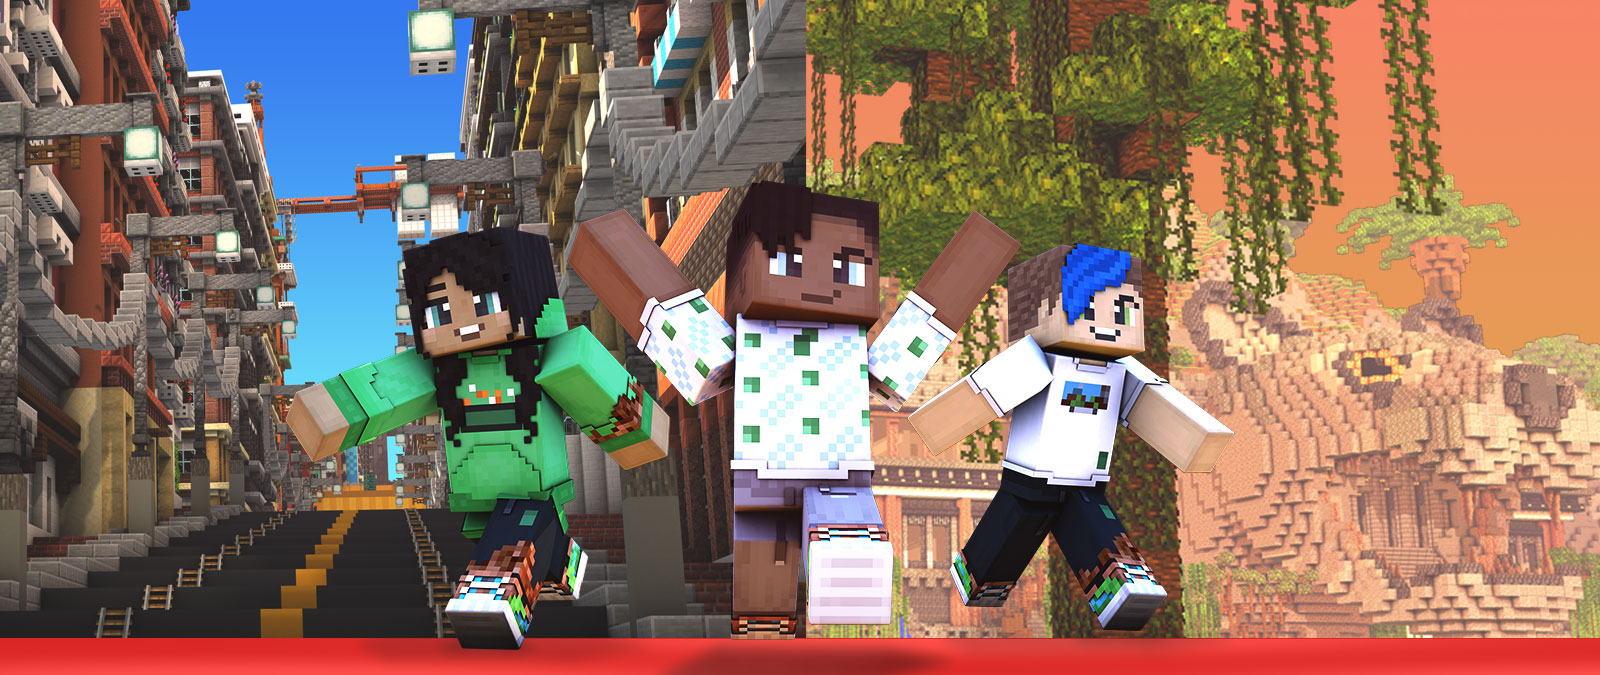 Три персонажа Minecraft на фоне карты города и джунглей